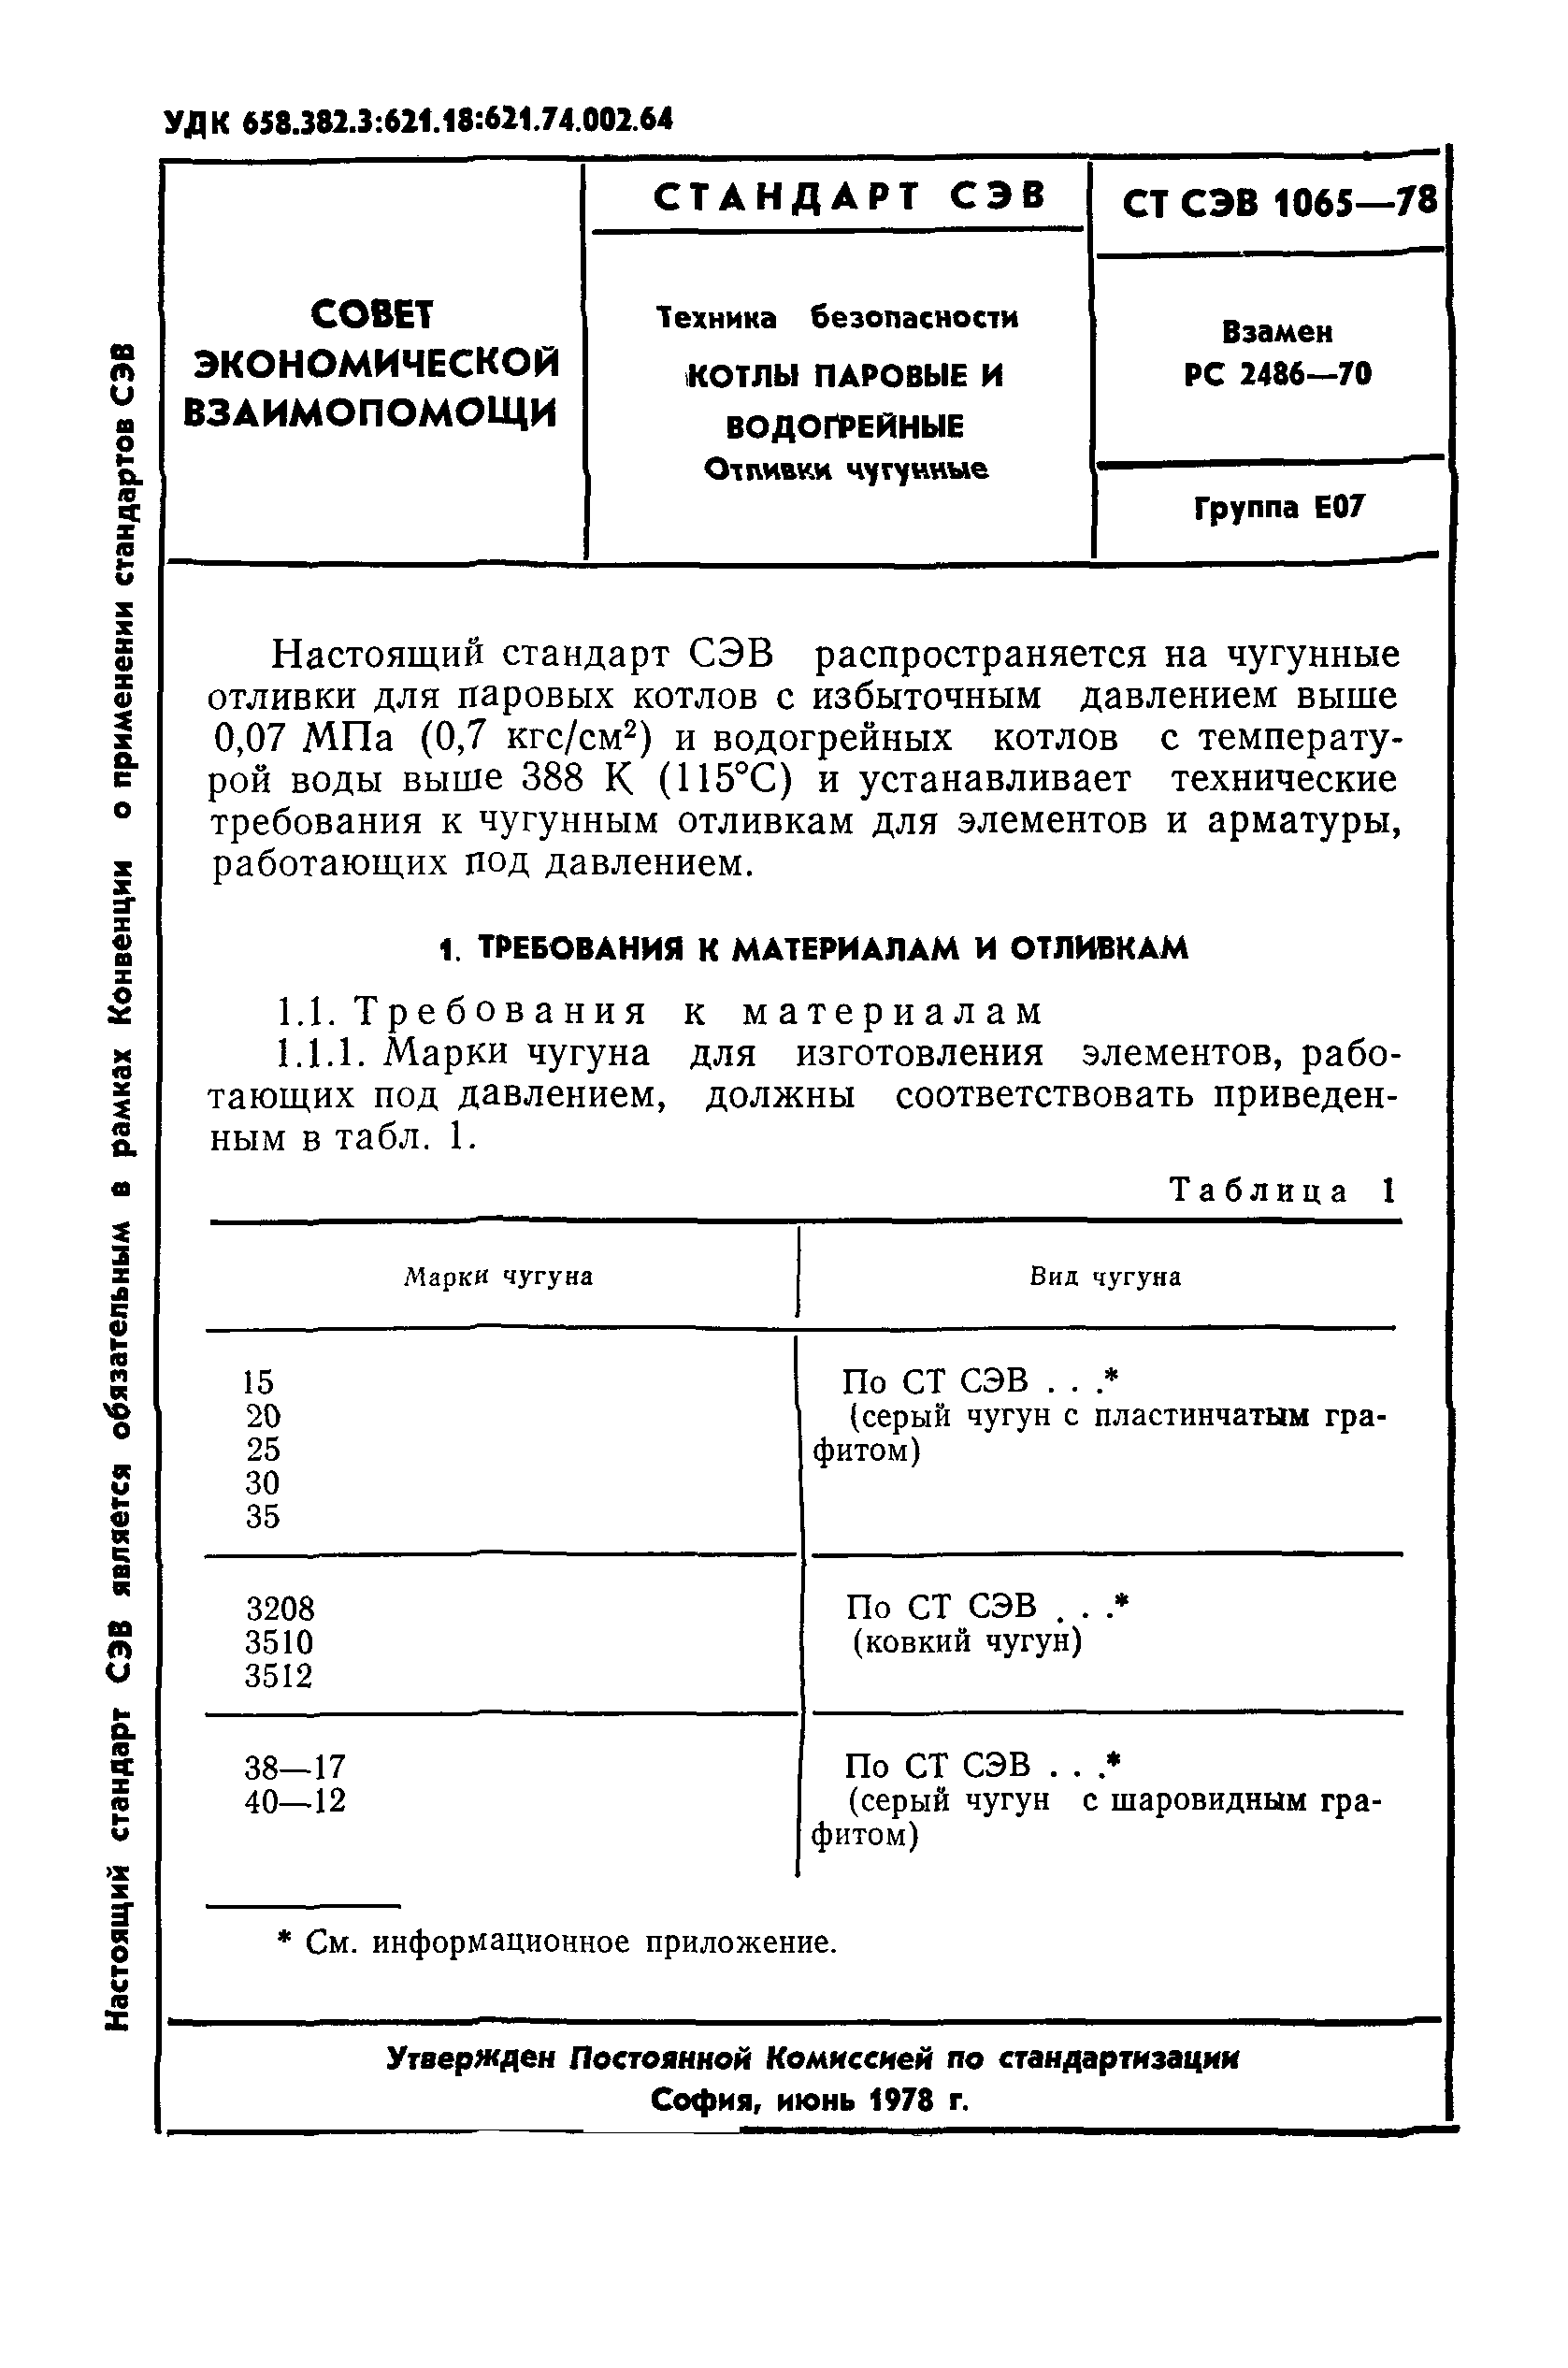 СТ СЭВ 1065-78